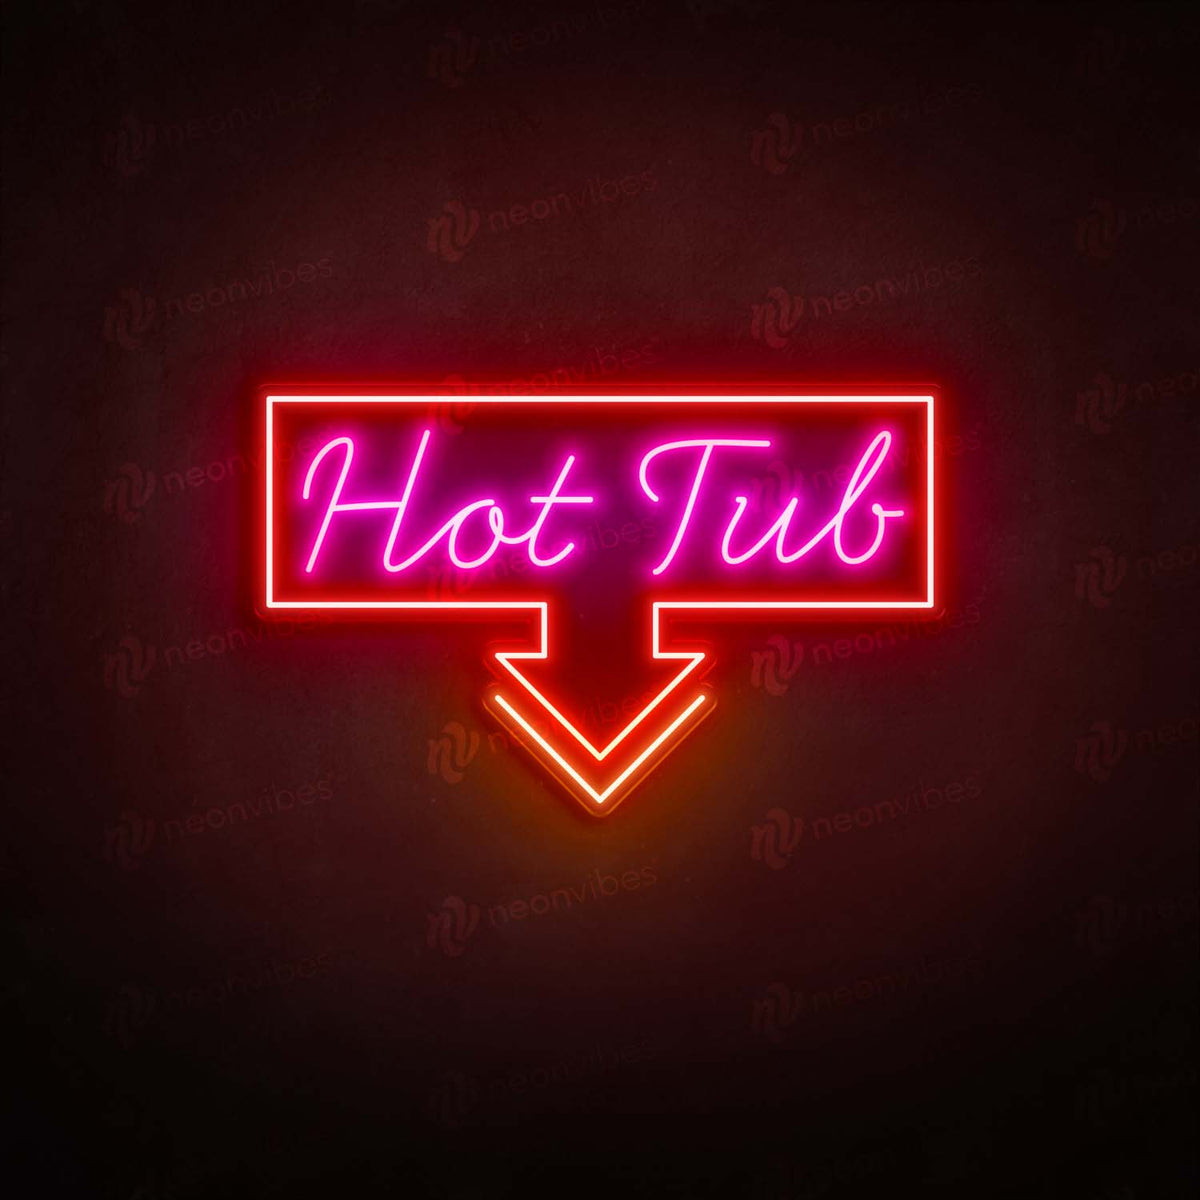 Hot Tub neon sign - V2